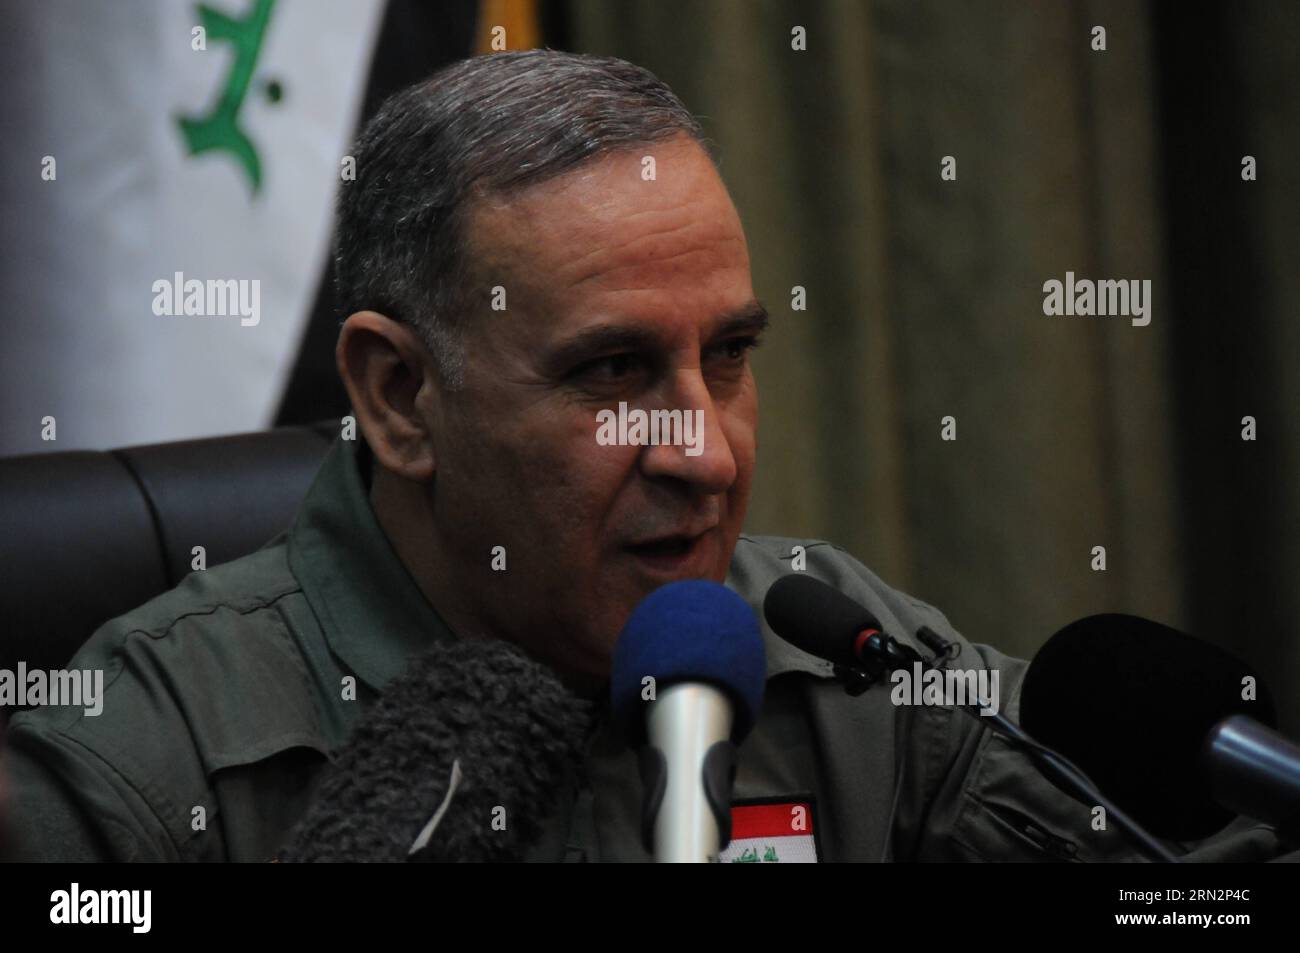 (150318) -- BAGDAD, 18. März 2015 -- irakischer Verteidigungsminister Khaled al-Obeidi (C) spricht auf einer Pressekonferenz in Bagdad, Irak, 18. März 2015. Der irakische Verteidigungsminister sagte am Mittwoch, dass die westliche Provinz des Landes Anbar entscheidend für eine größere Offensive zur Befreiung der Stadt Mossul von den IS-Militanten sei, während die Auseinandersetzungen mit IS-Militanten im Westen der irakischen Hauptstadt Bagdad fortgesetzt würden. IRAK-BAGDAD-PRESSEKONFERENZ-VERTEIDIGUNGSMINISTER KhaleemxKadhim PUBLICATIONxNOTxINxCHN Bagdad 18. März 2015 irakische Verteidigungsminister Khaled Al Obeidi C spricht AUF einer Pressekonferenz Stockfoto